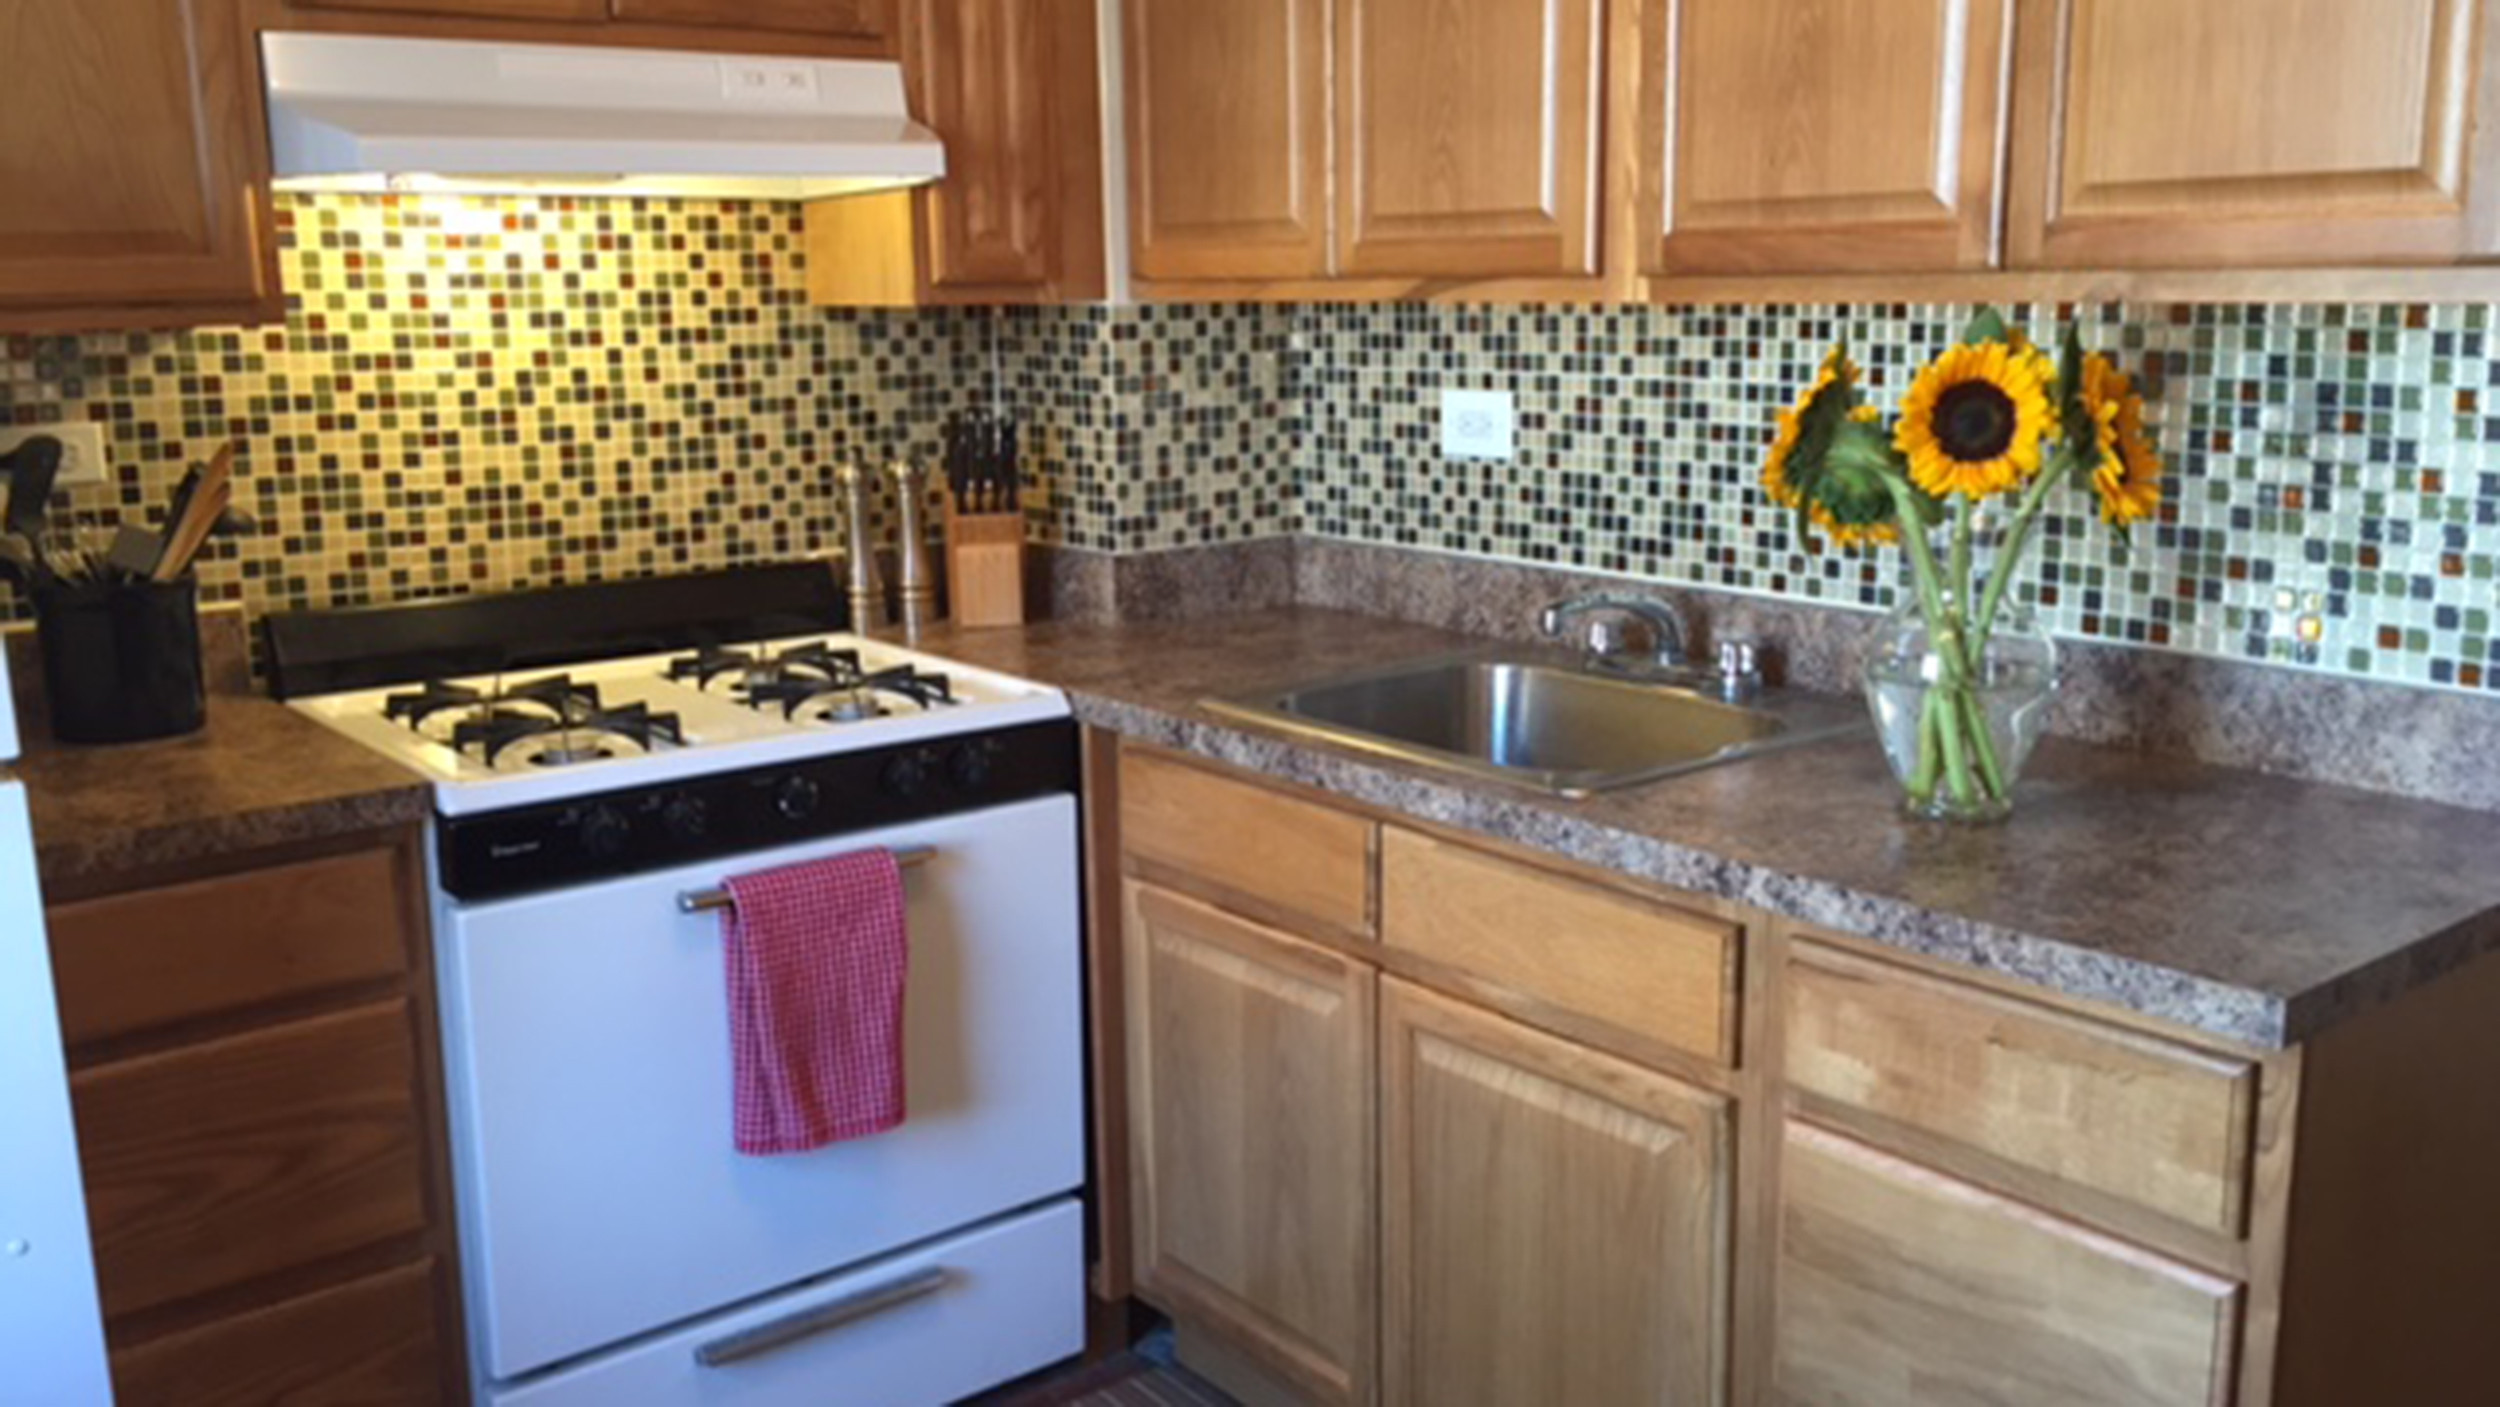 Pictures Of Kitchen Backsplash Tile
 TODAY tests temporary backsplash tiles from Smart Tiles